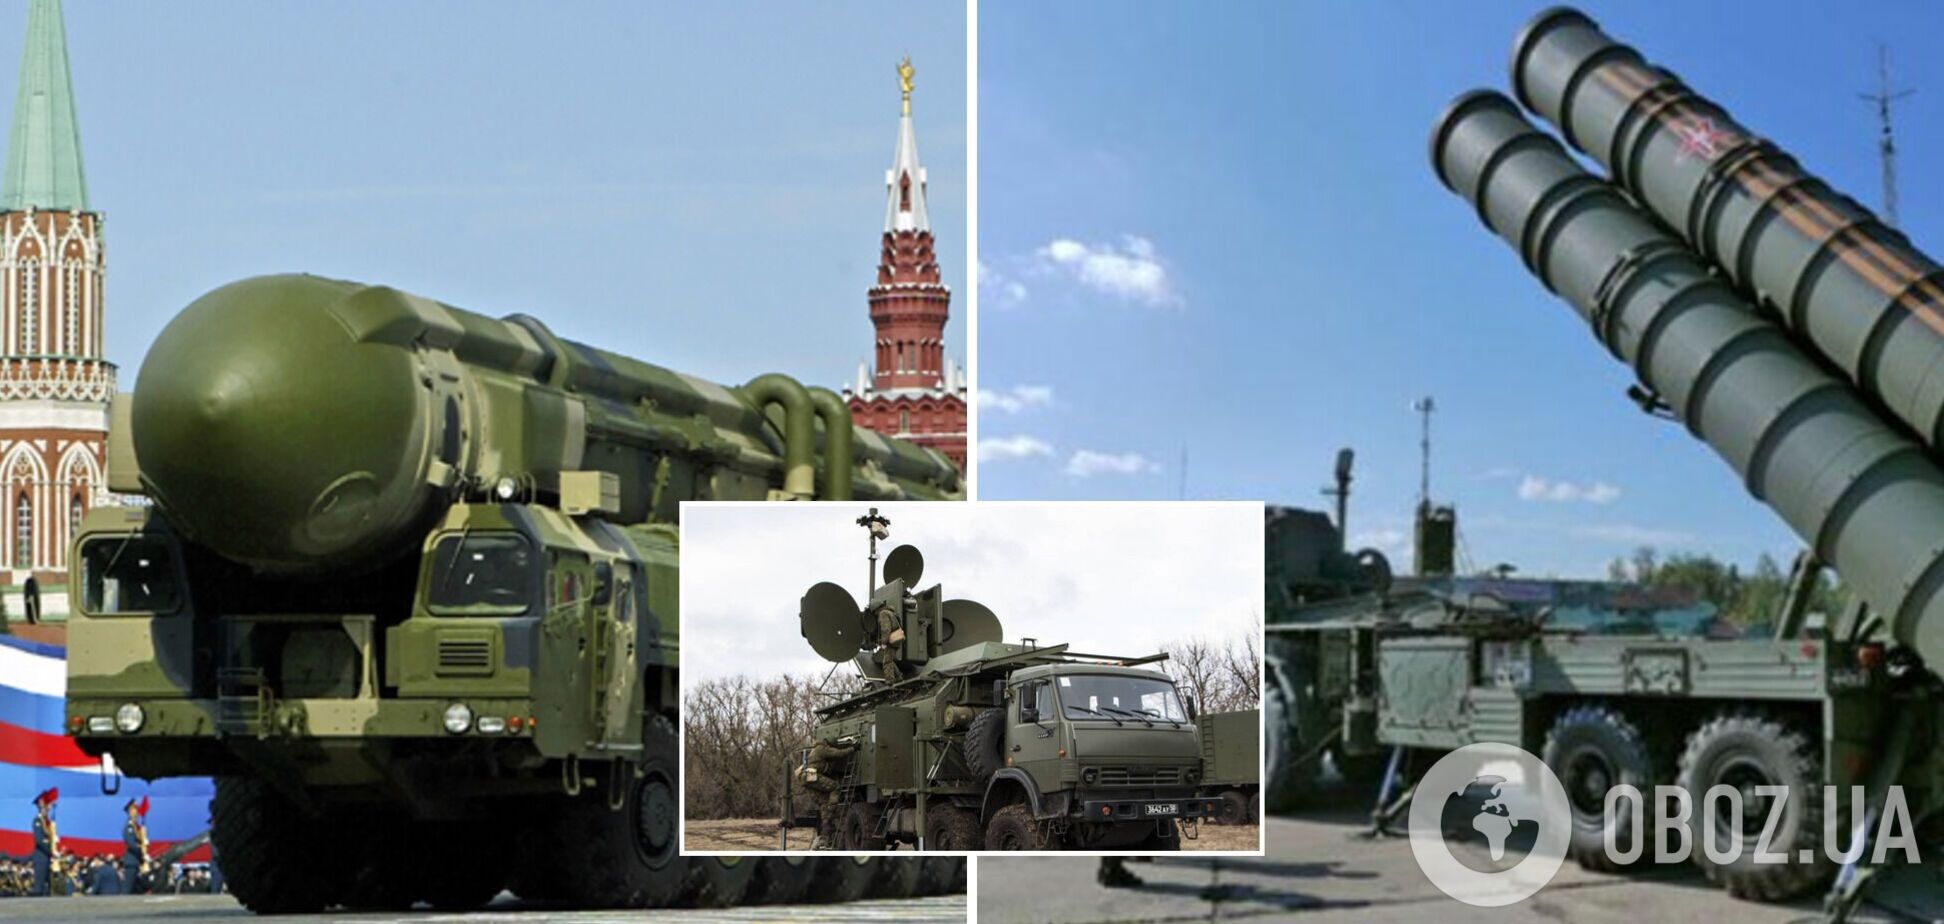 У зброї, яку РФ застосовувала проти України, виявлено комплектовання західного виробництва.